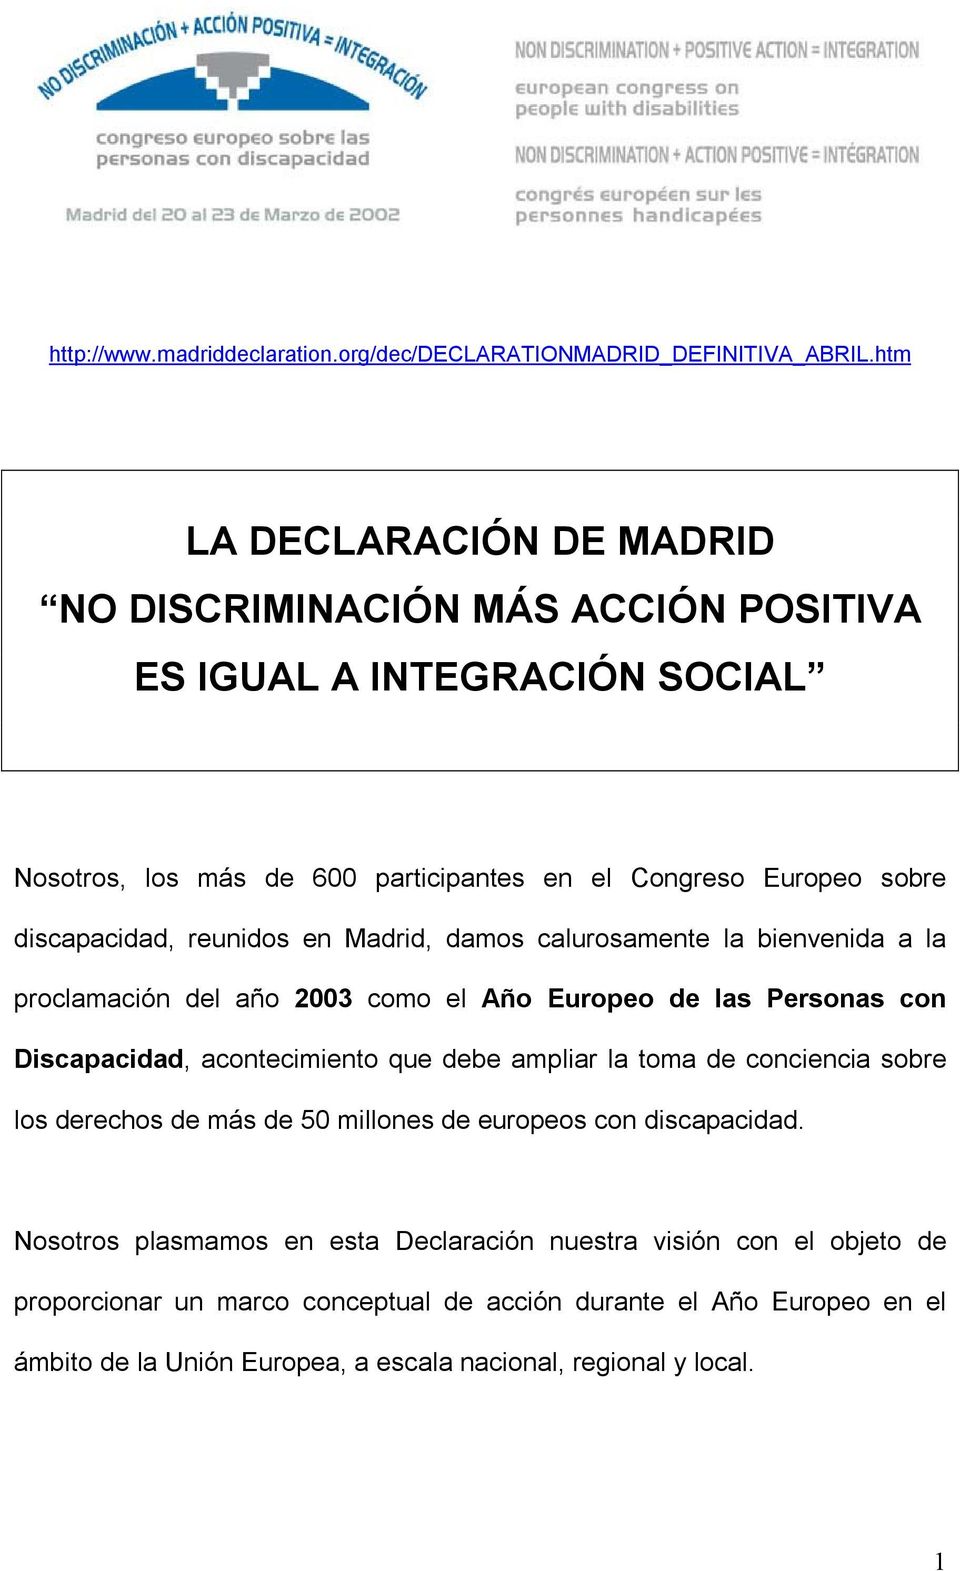 reunidos en Madrid, damos calurosamente la bienvenida a la proclamación del año 2003 como el Año Europeo de las Personas con Discapacidad, acontecimiento que debe ampliar la toma